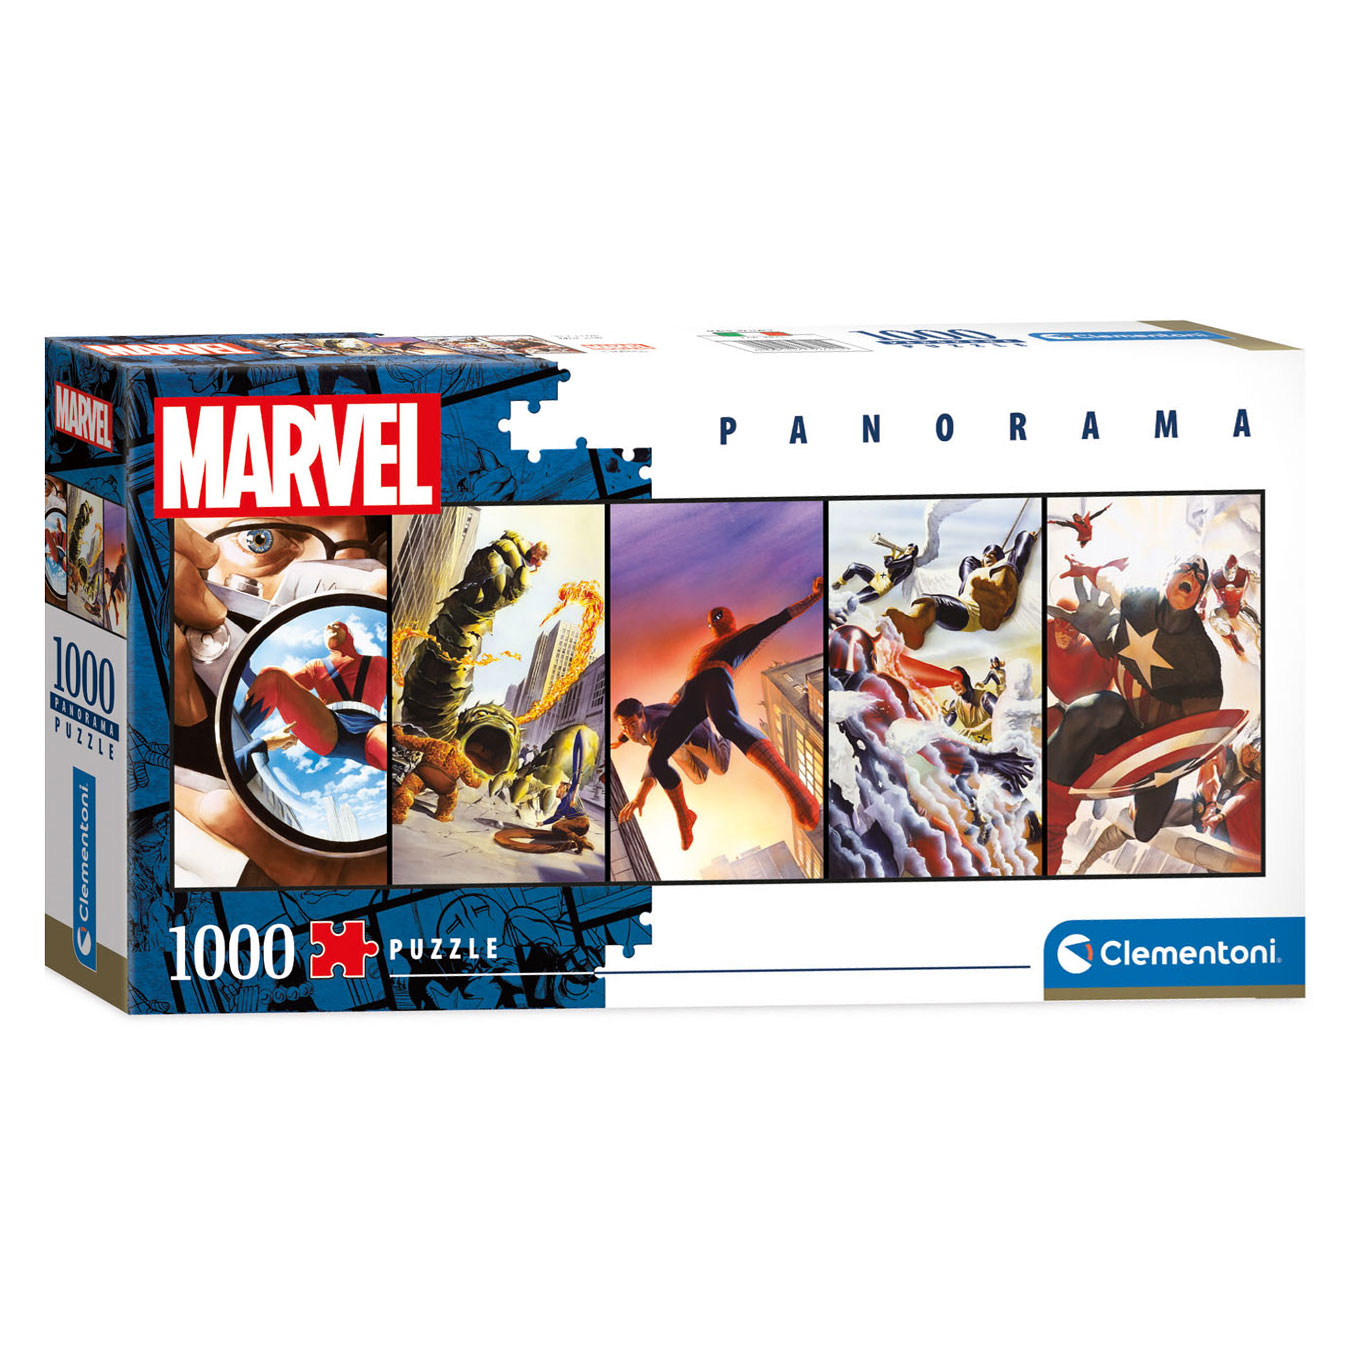 Clementoni Panorama Puzzle Marvel Super-héros, 1000 pièces.